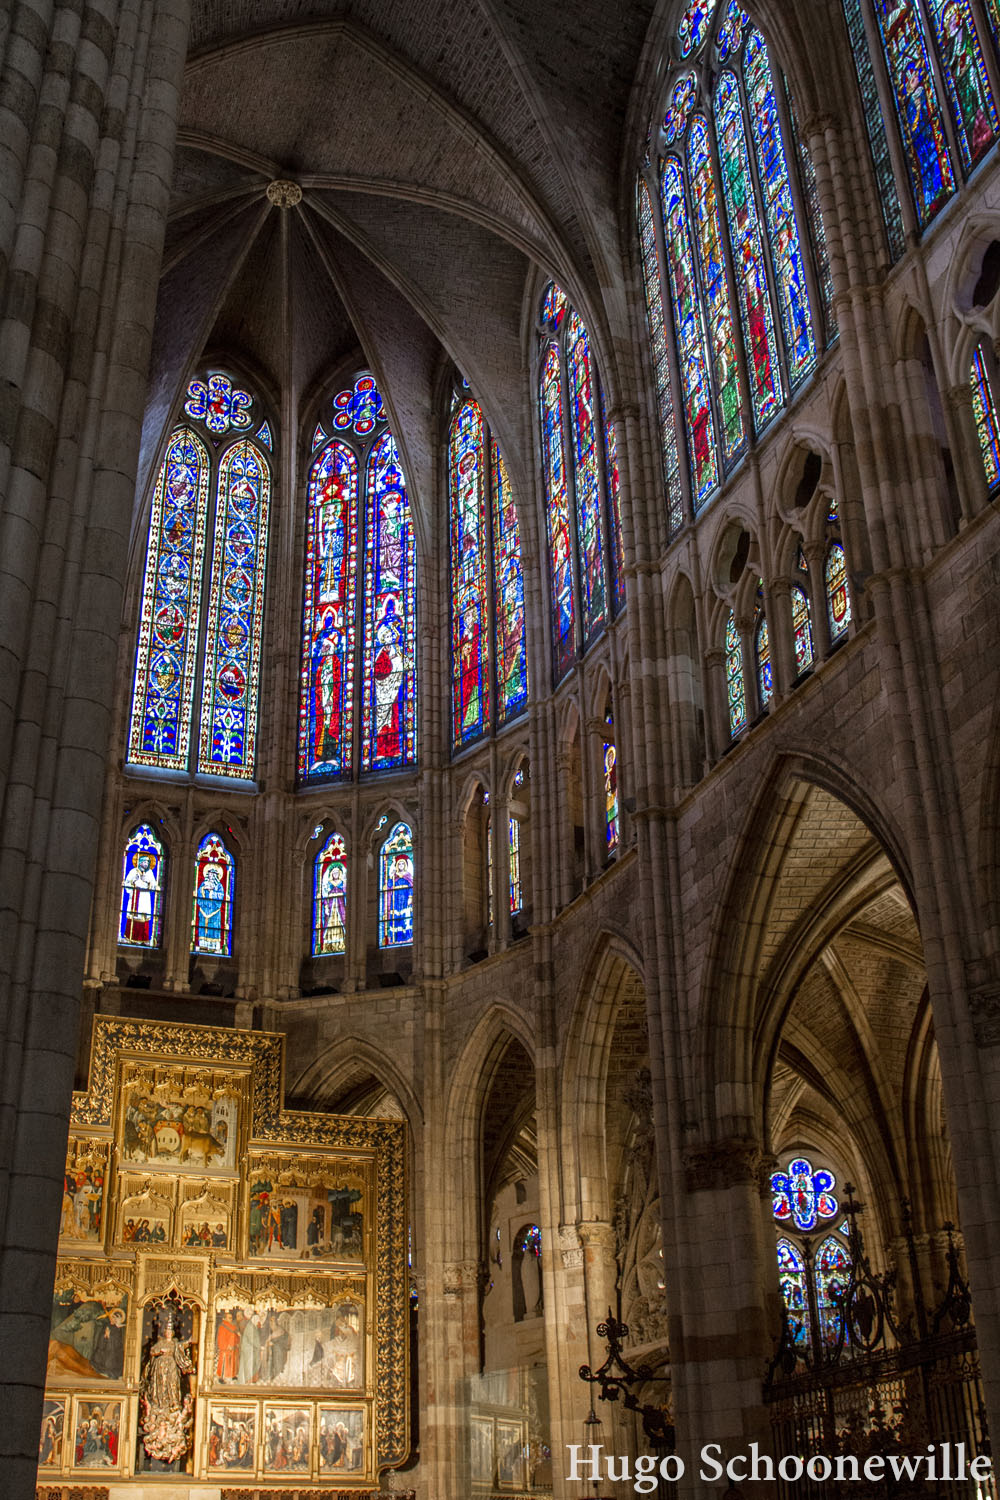 Licht dat valt door de glas-in-lood ramen in de prachtige kathedraal van León.